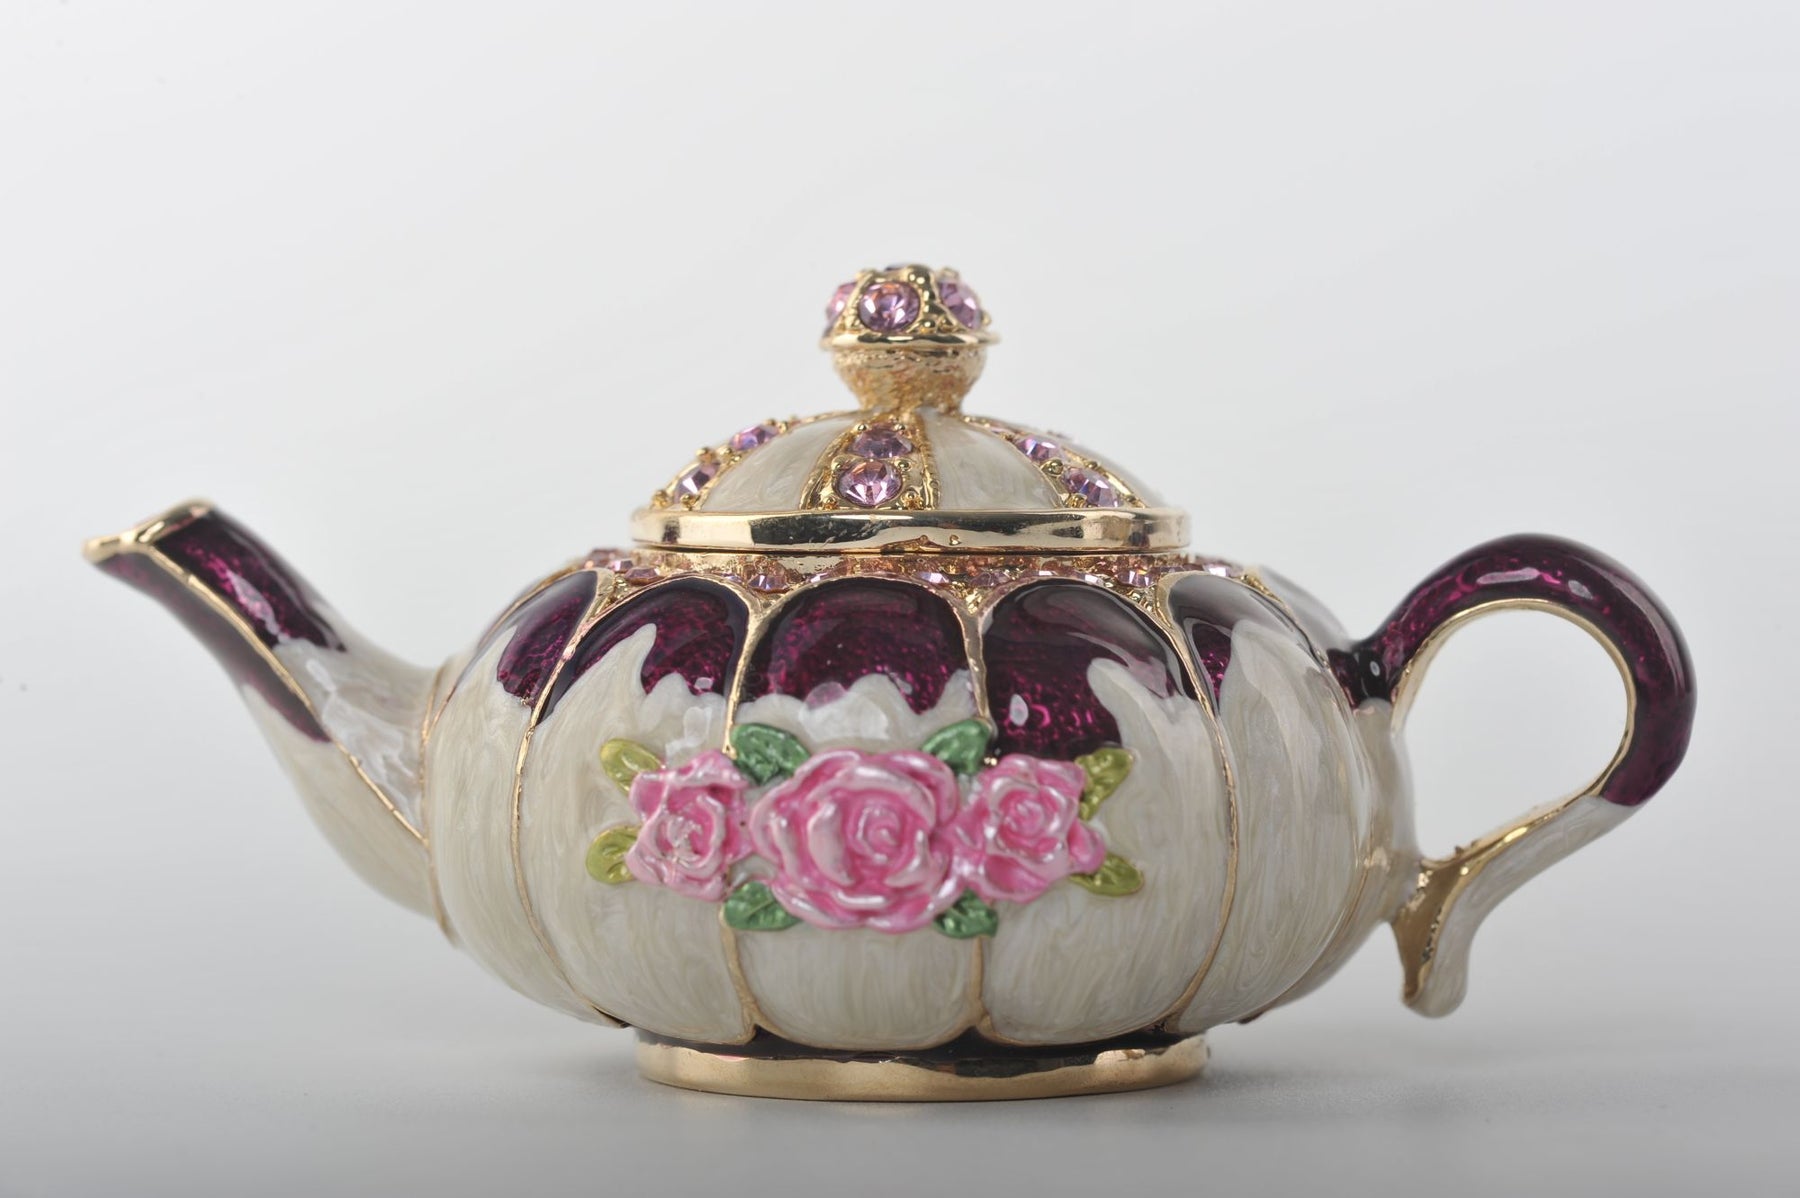 Keren Kopal White Teapot with Pink Roses  53.50